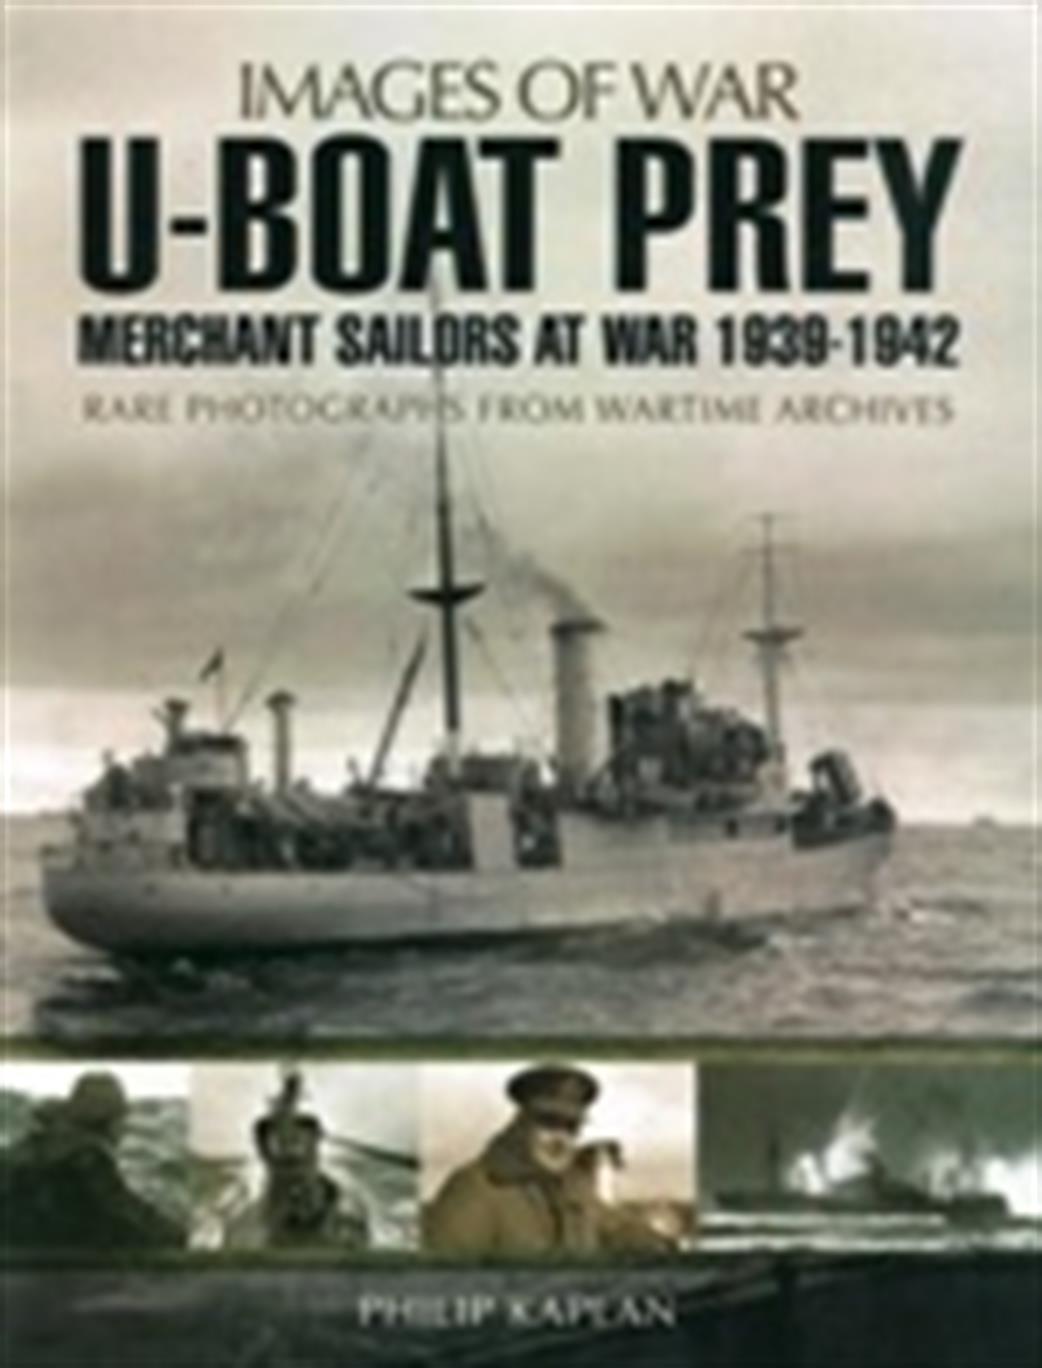 Pen & Sword 9781783462940 Images of War U-Boat Prey - Merchant Sailors at War 1939 - 1942